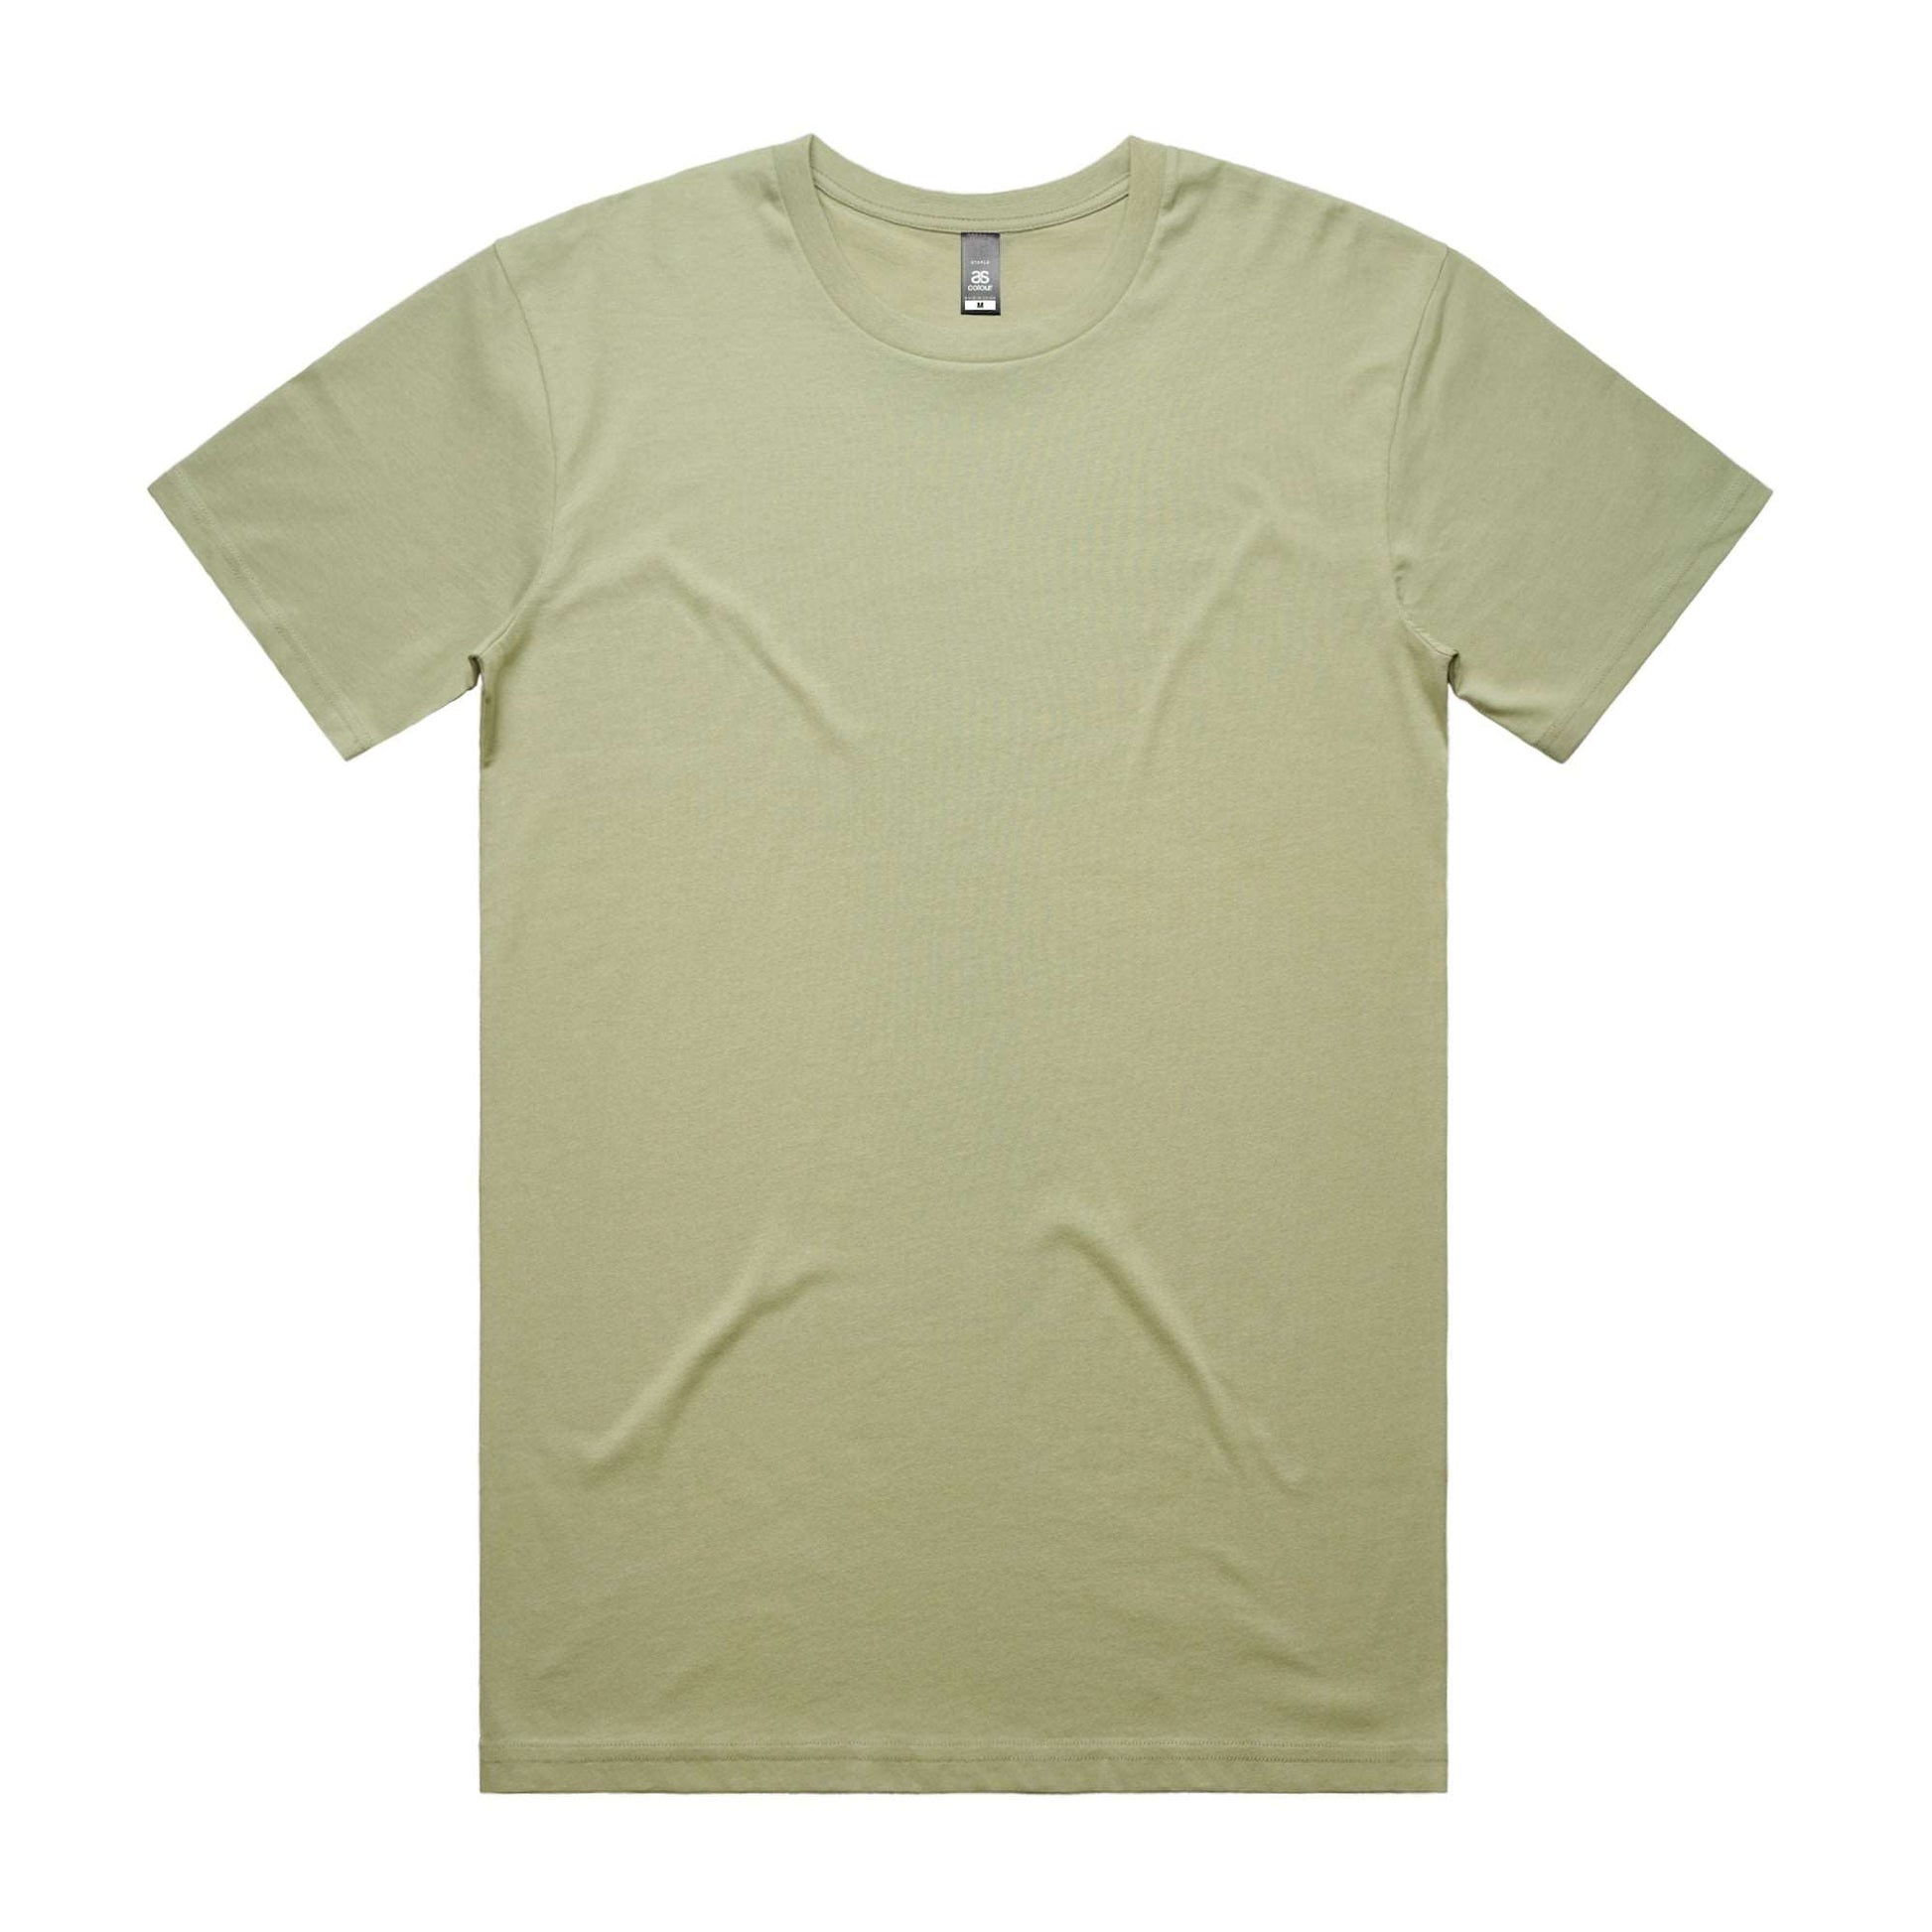 5001 - High Quality T-shirt